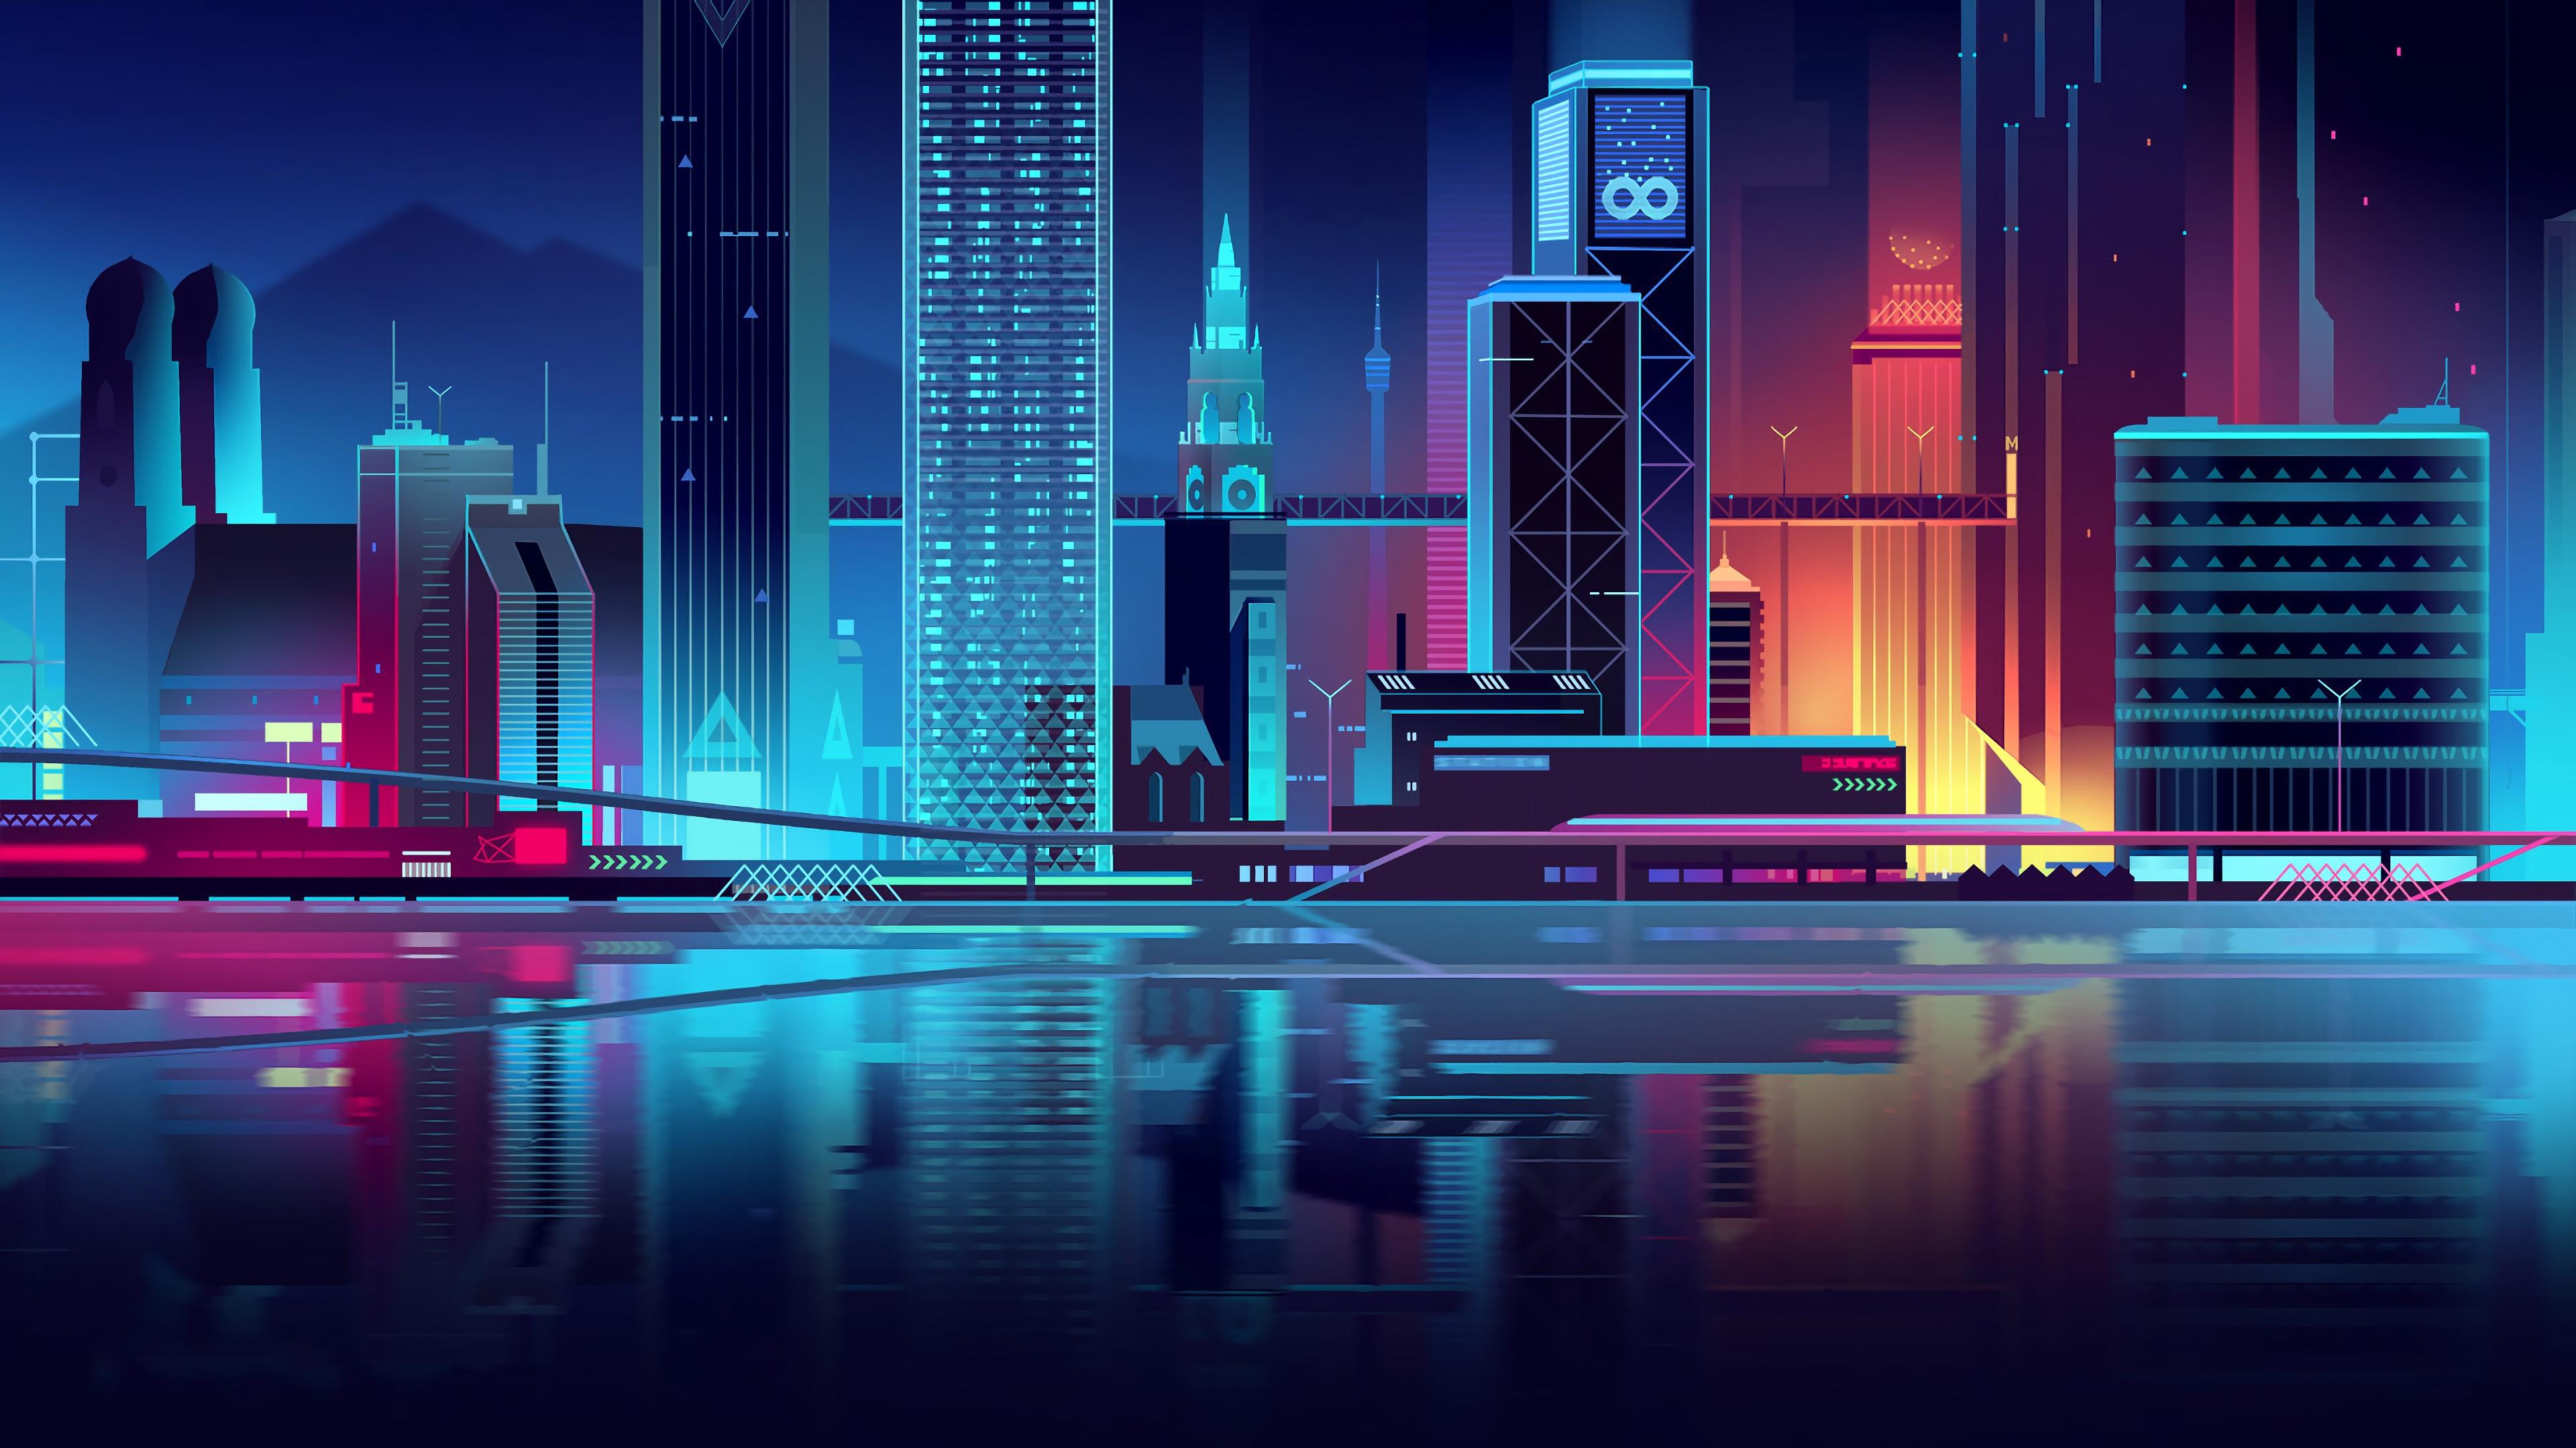 Sci Fi City 4k Ultra HD Wallpaper By Romain Trystram